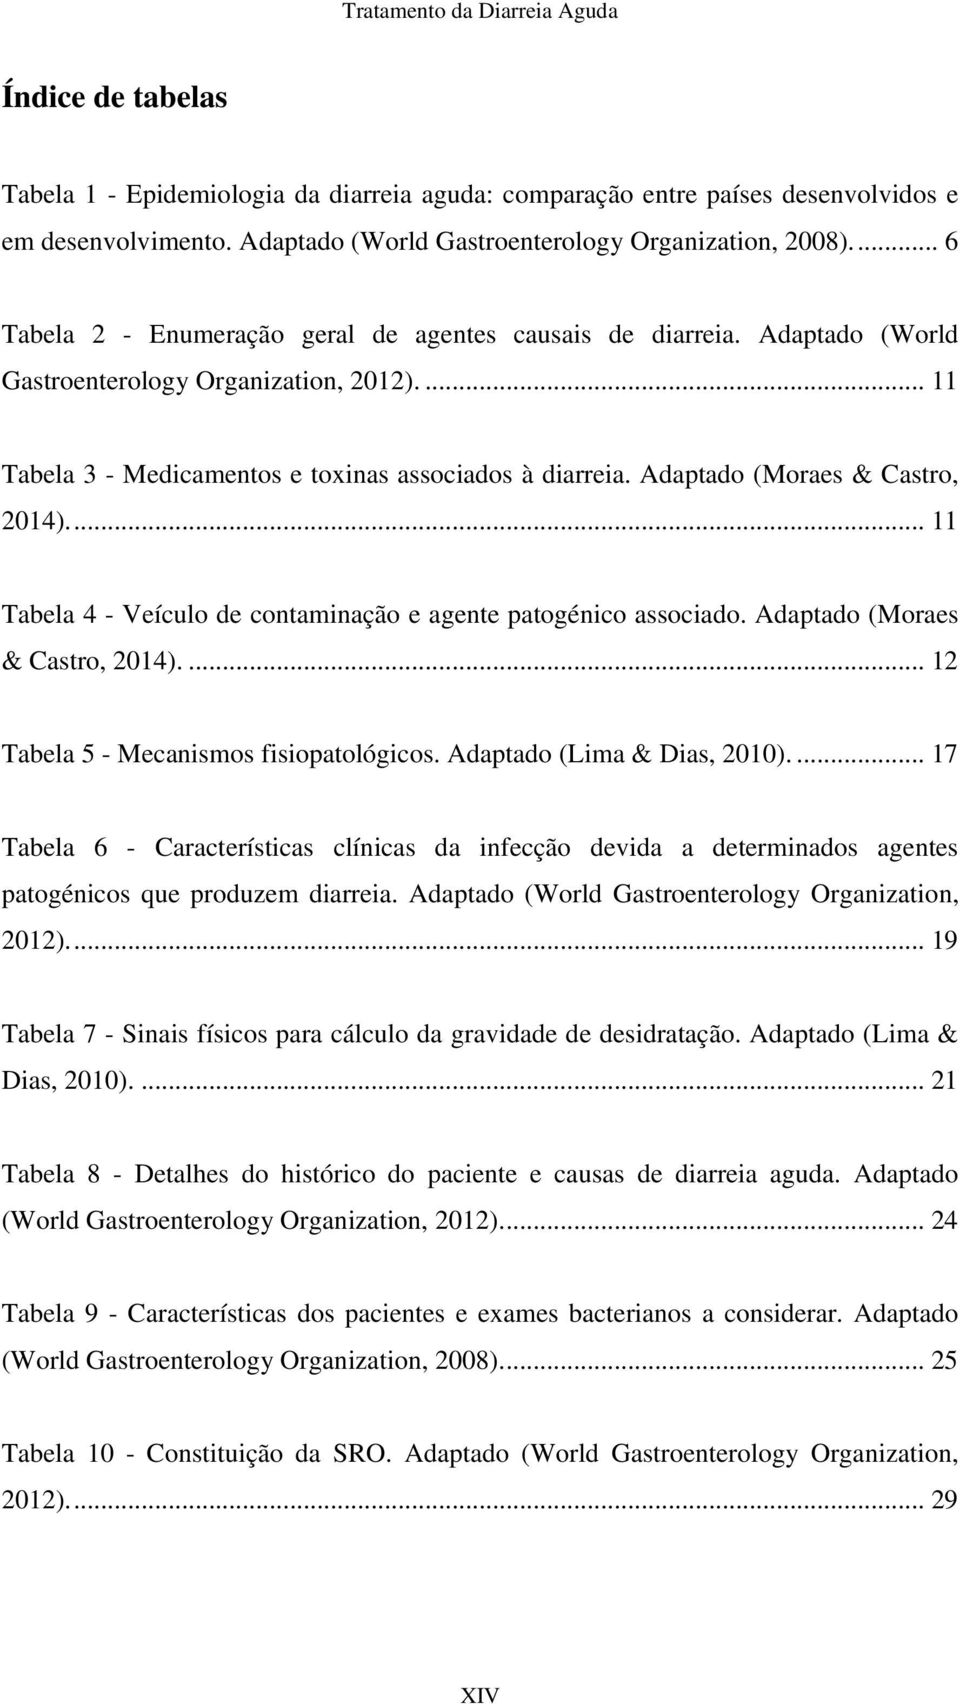 Adaptado (Moraes & Castro, 2014).... 11 Tabela 4 - Veículo de contaminação e agente patogénico associado. Adaptado (Moraes & Castro, 2014).... 12 Tabela 5 - Mecanismos fisiopatológicos.